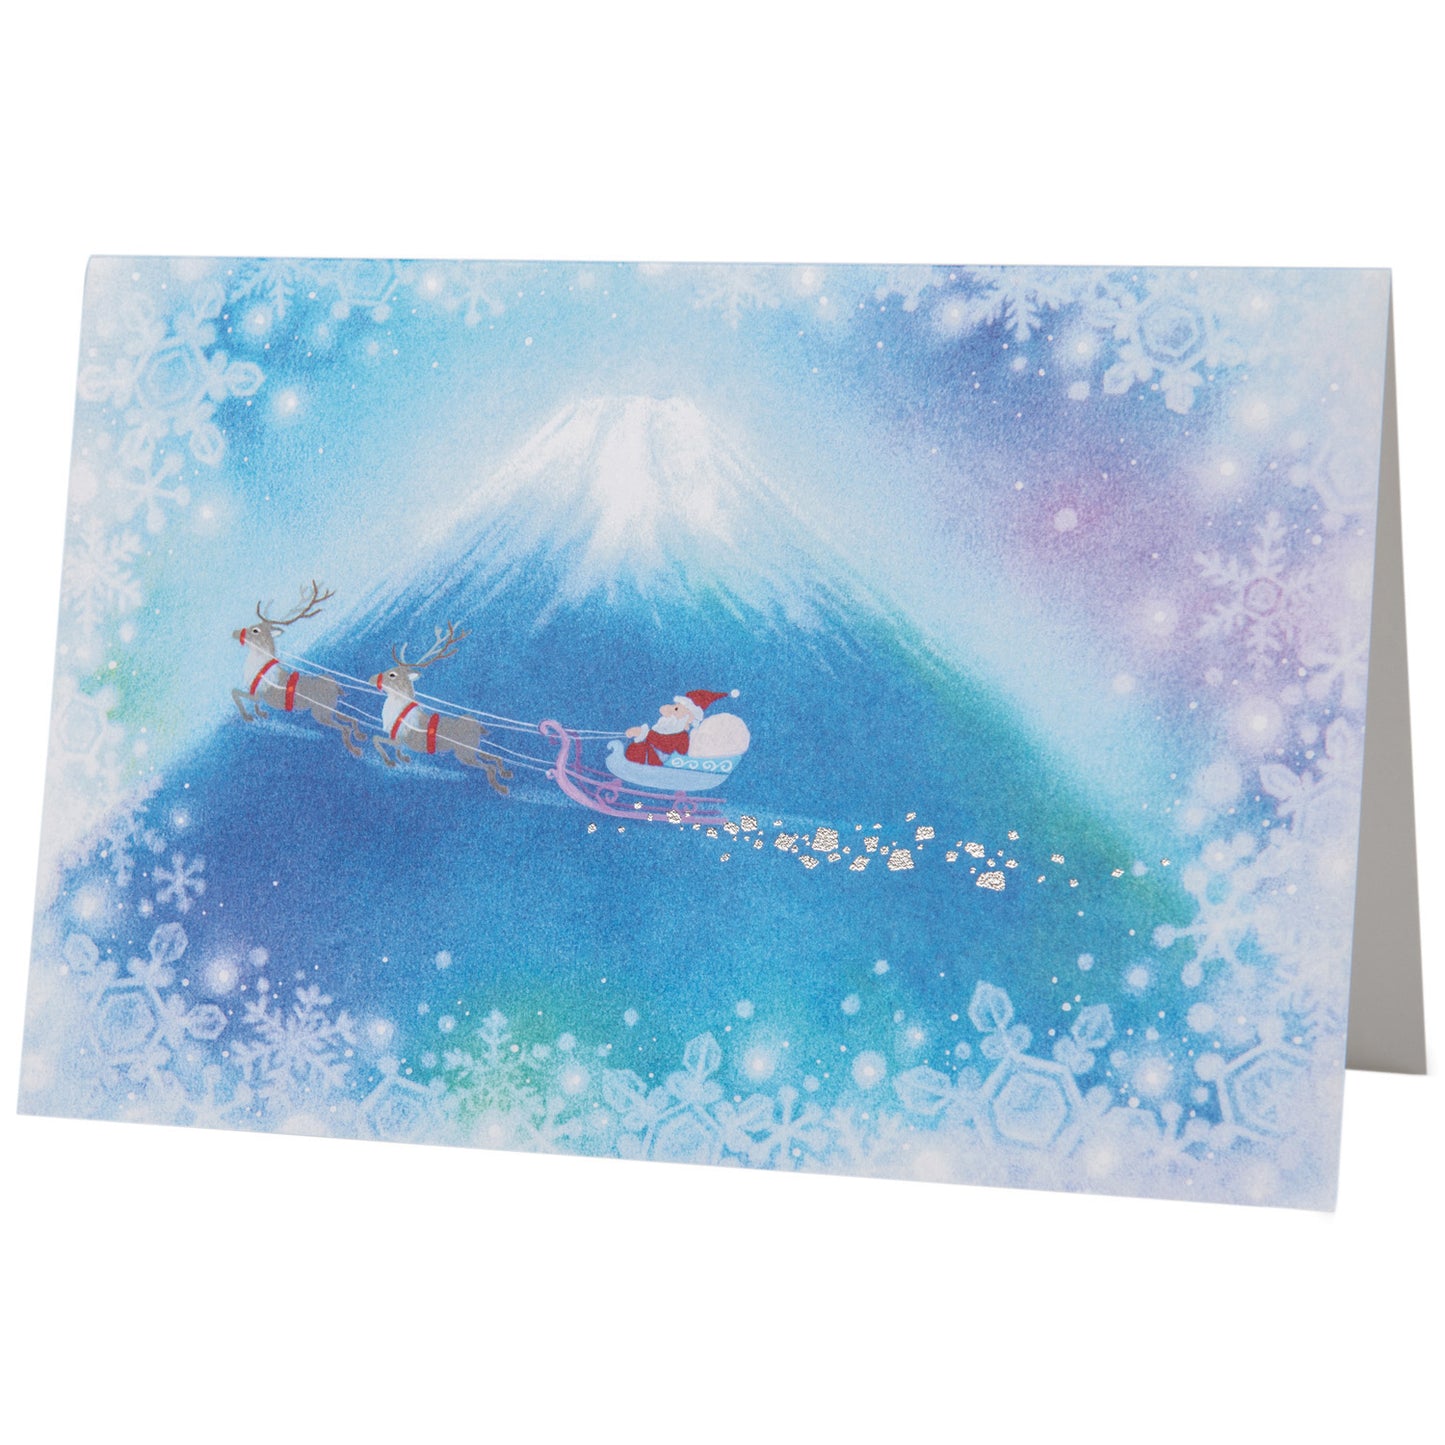 Santa Flies by Fuji Japanese Xmas Card